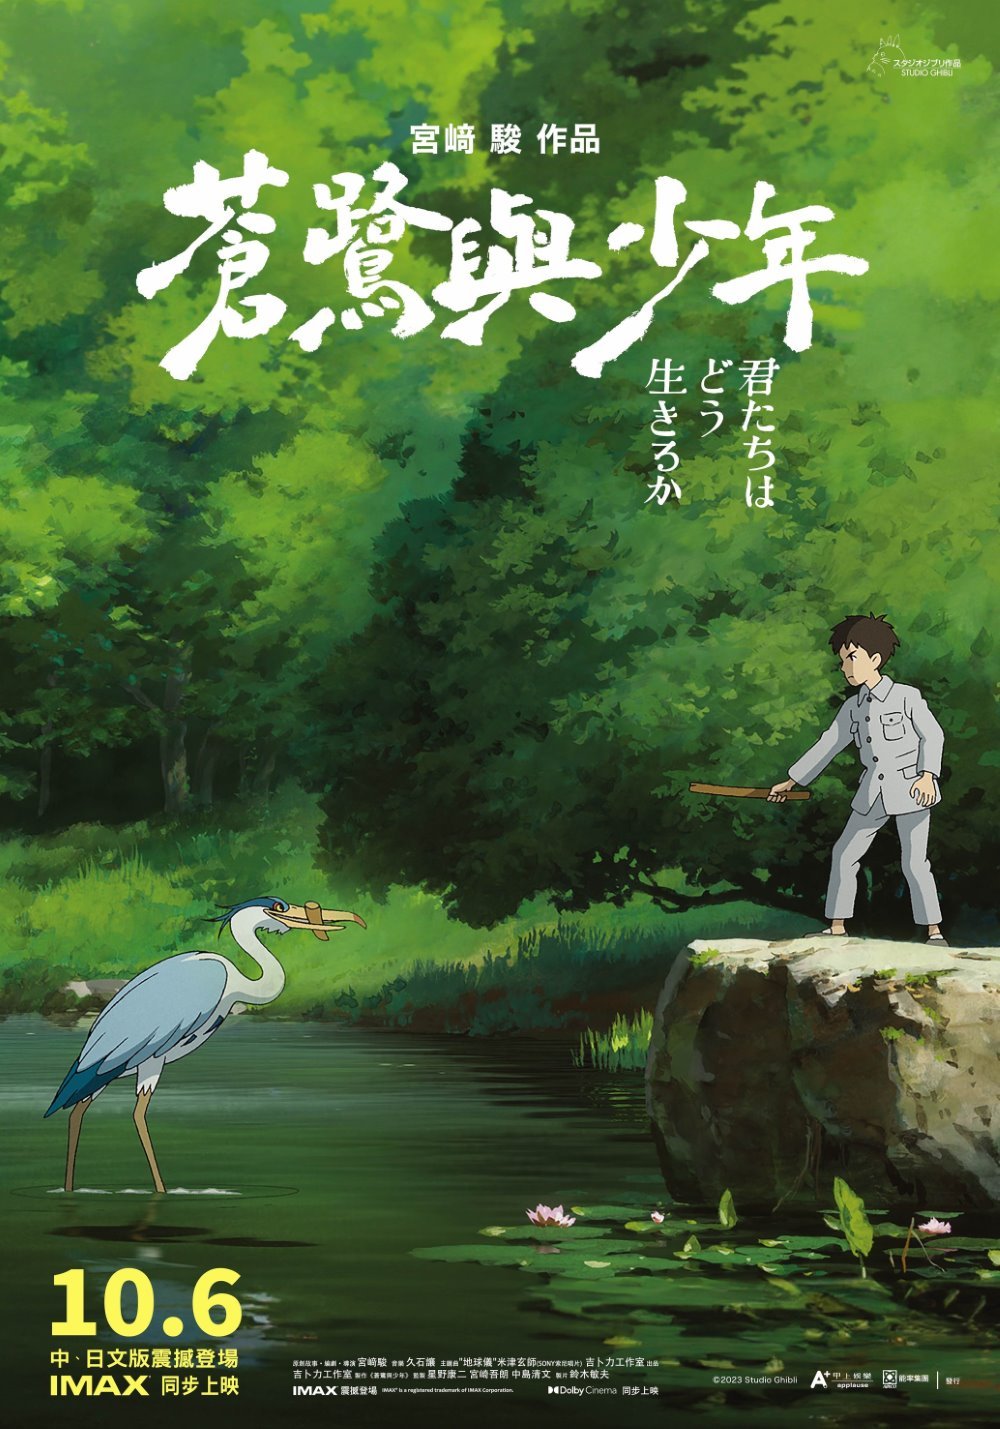 蒼鷺與少年 (日語 IMAX版)電影圖片 - poster_1696905081.jpg